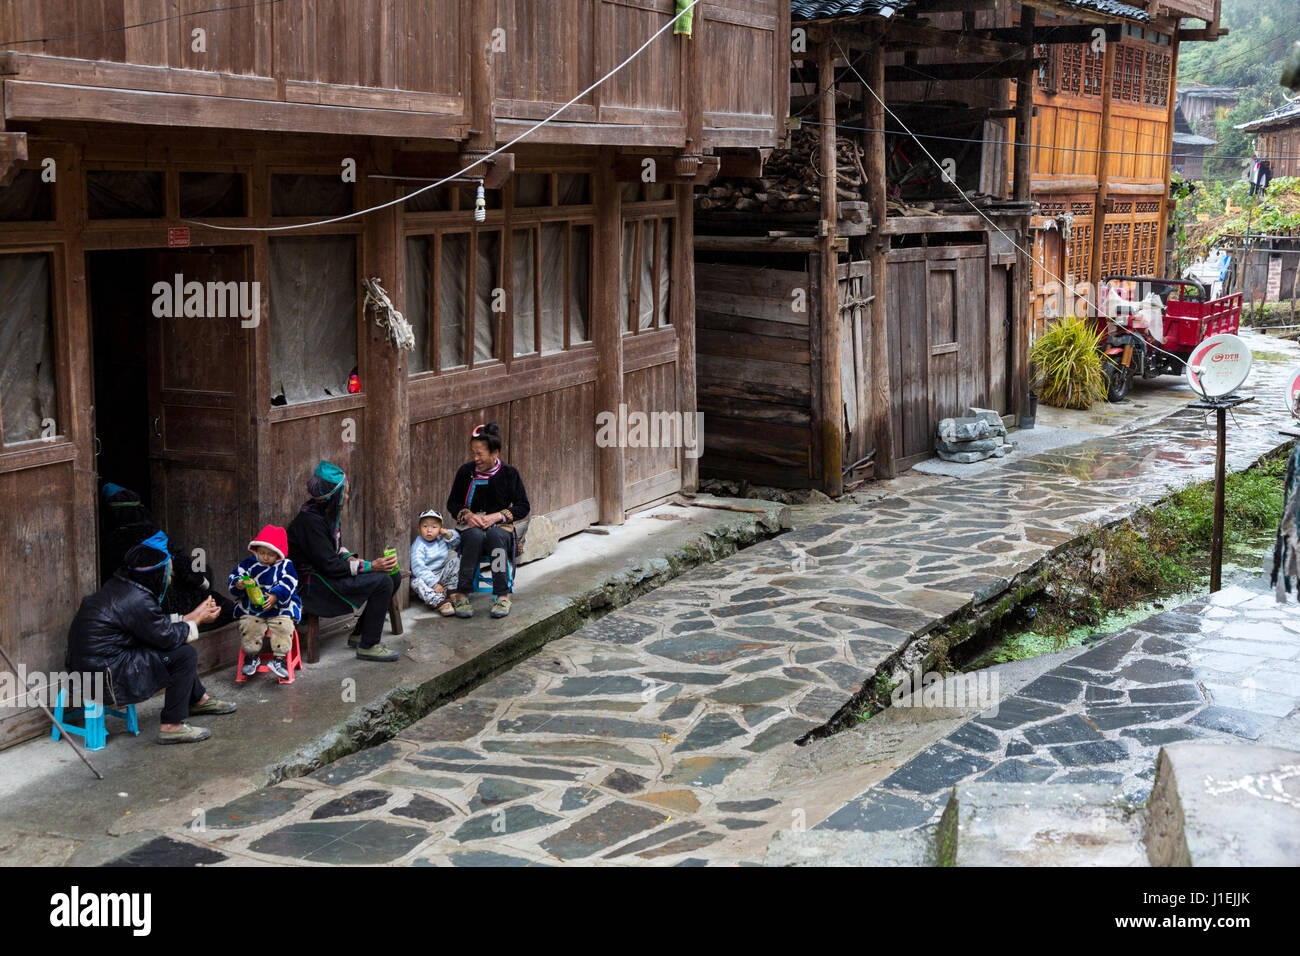 Huanggang, Guizhou, en Chine. Un village ethnique. Les femmes et les enfants assis en face d'une maison. Antenne satellite sur la droite. Banque D'Images